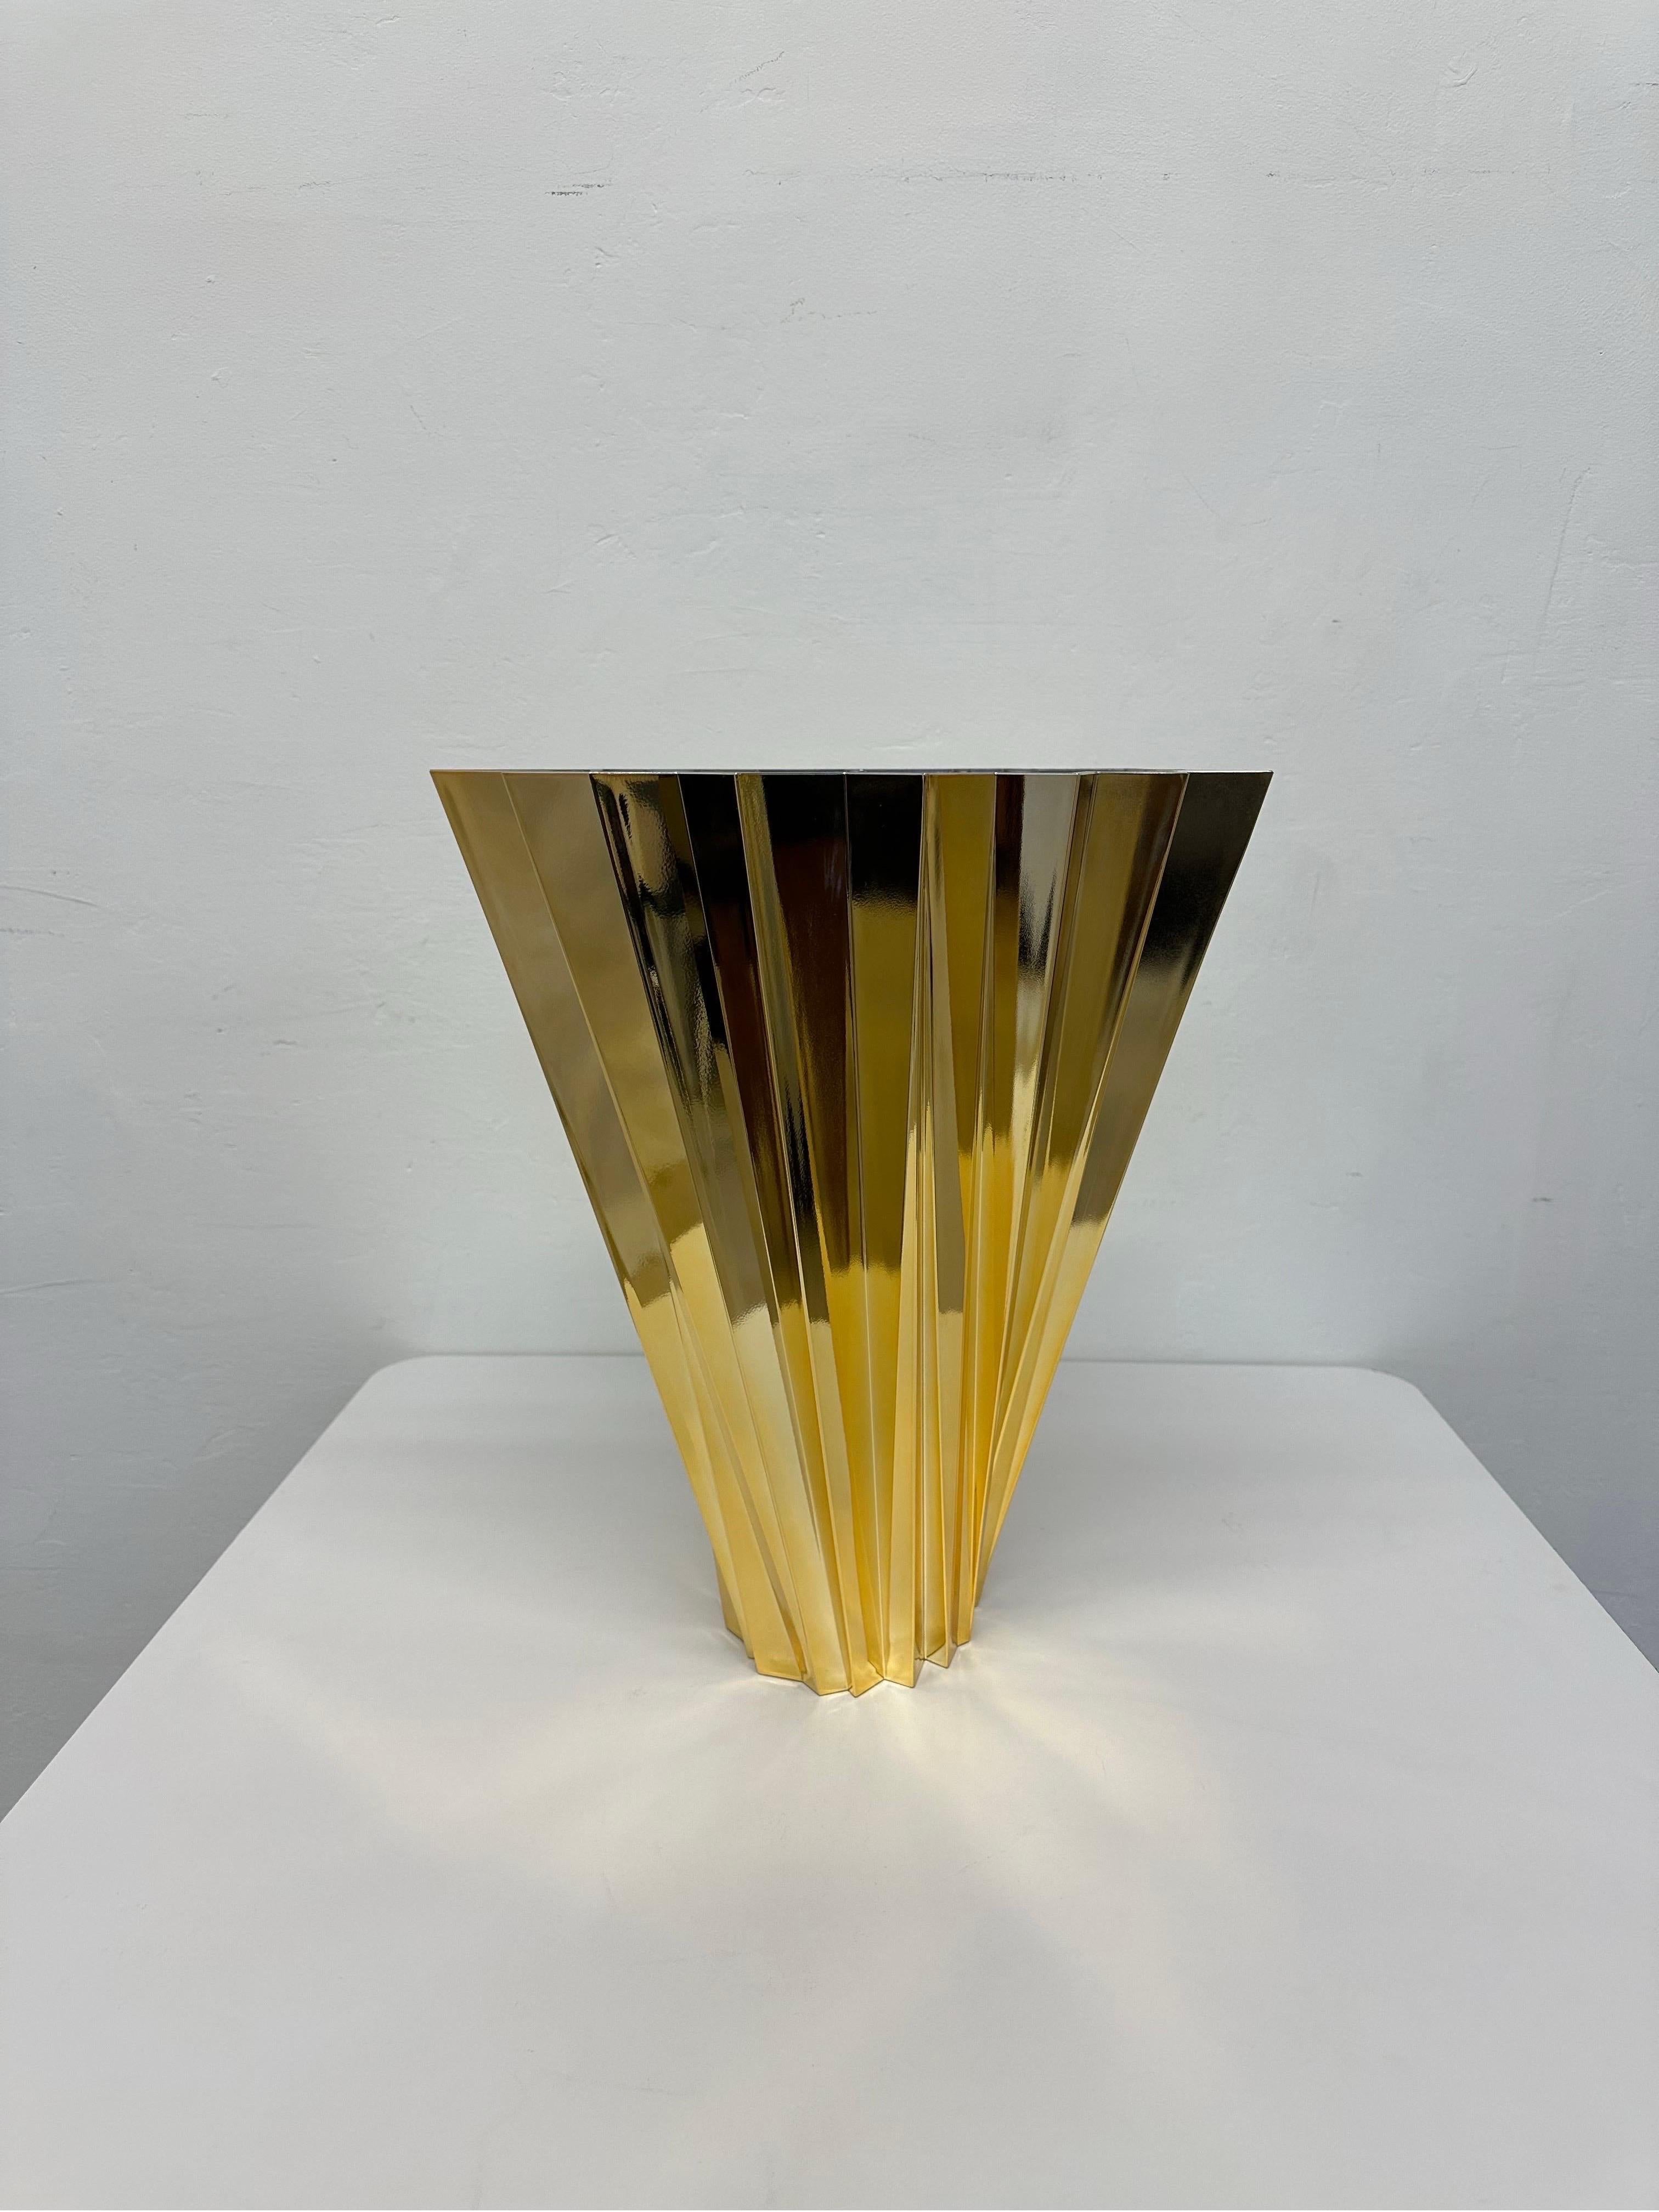 Vase Shanghai en or conçu par Mario Bellini pour Kartell.

Un vase aux multiples facettes s'élargissant de la base au sommet dans un mouvement tourbillonnant. A est comme une lumière réfractée rayonnant de cristaux prismatiques avec un jeu alterné